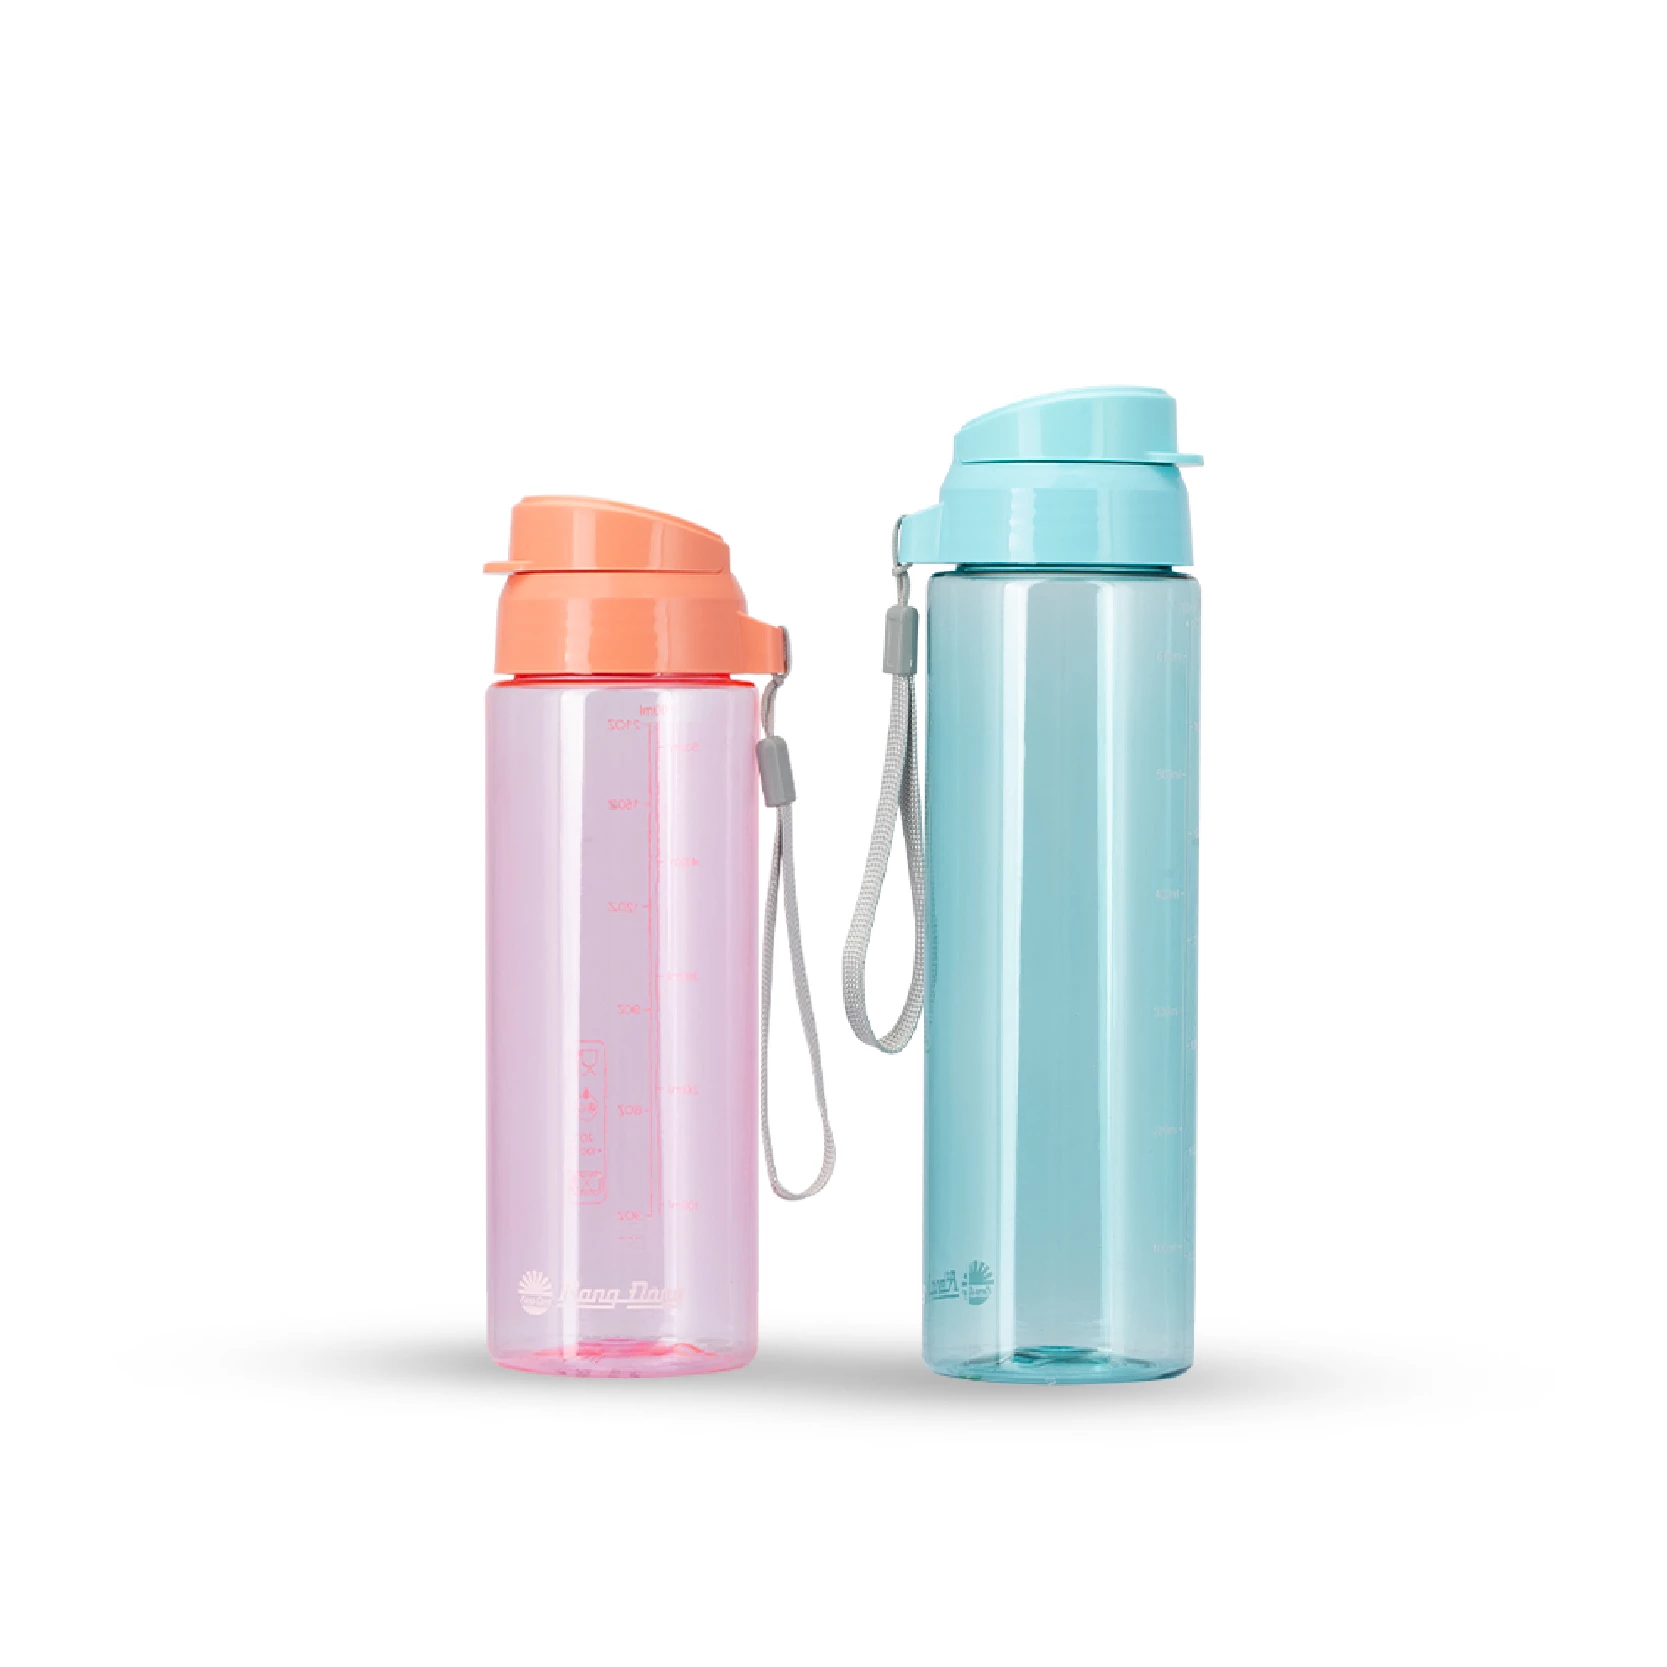 Plastic Water Bottles - Series 2